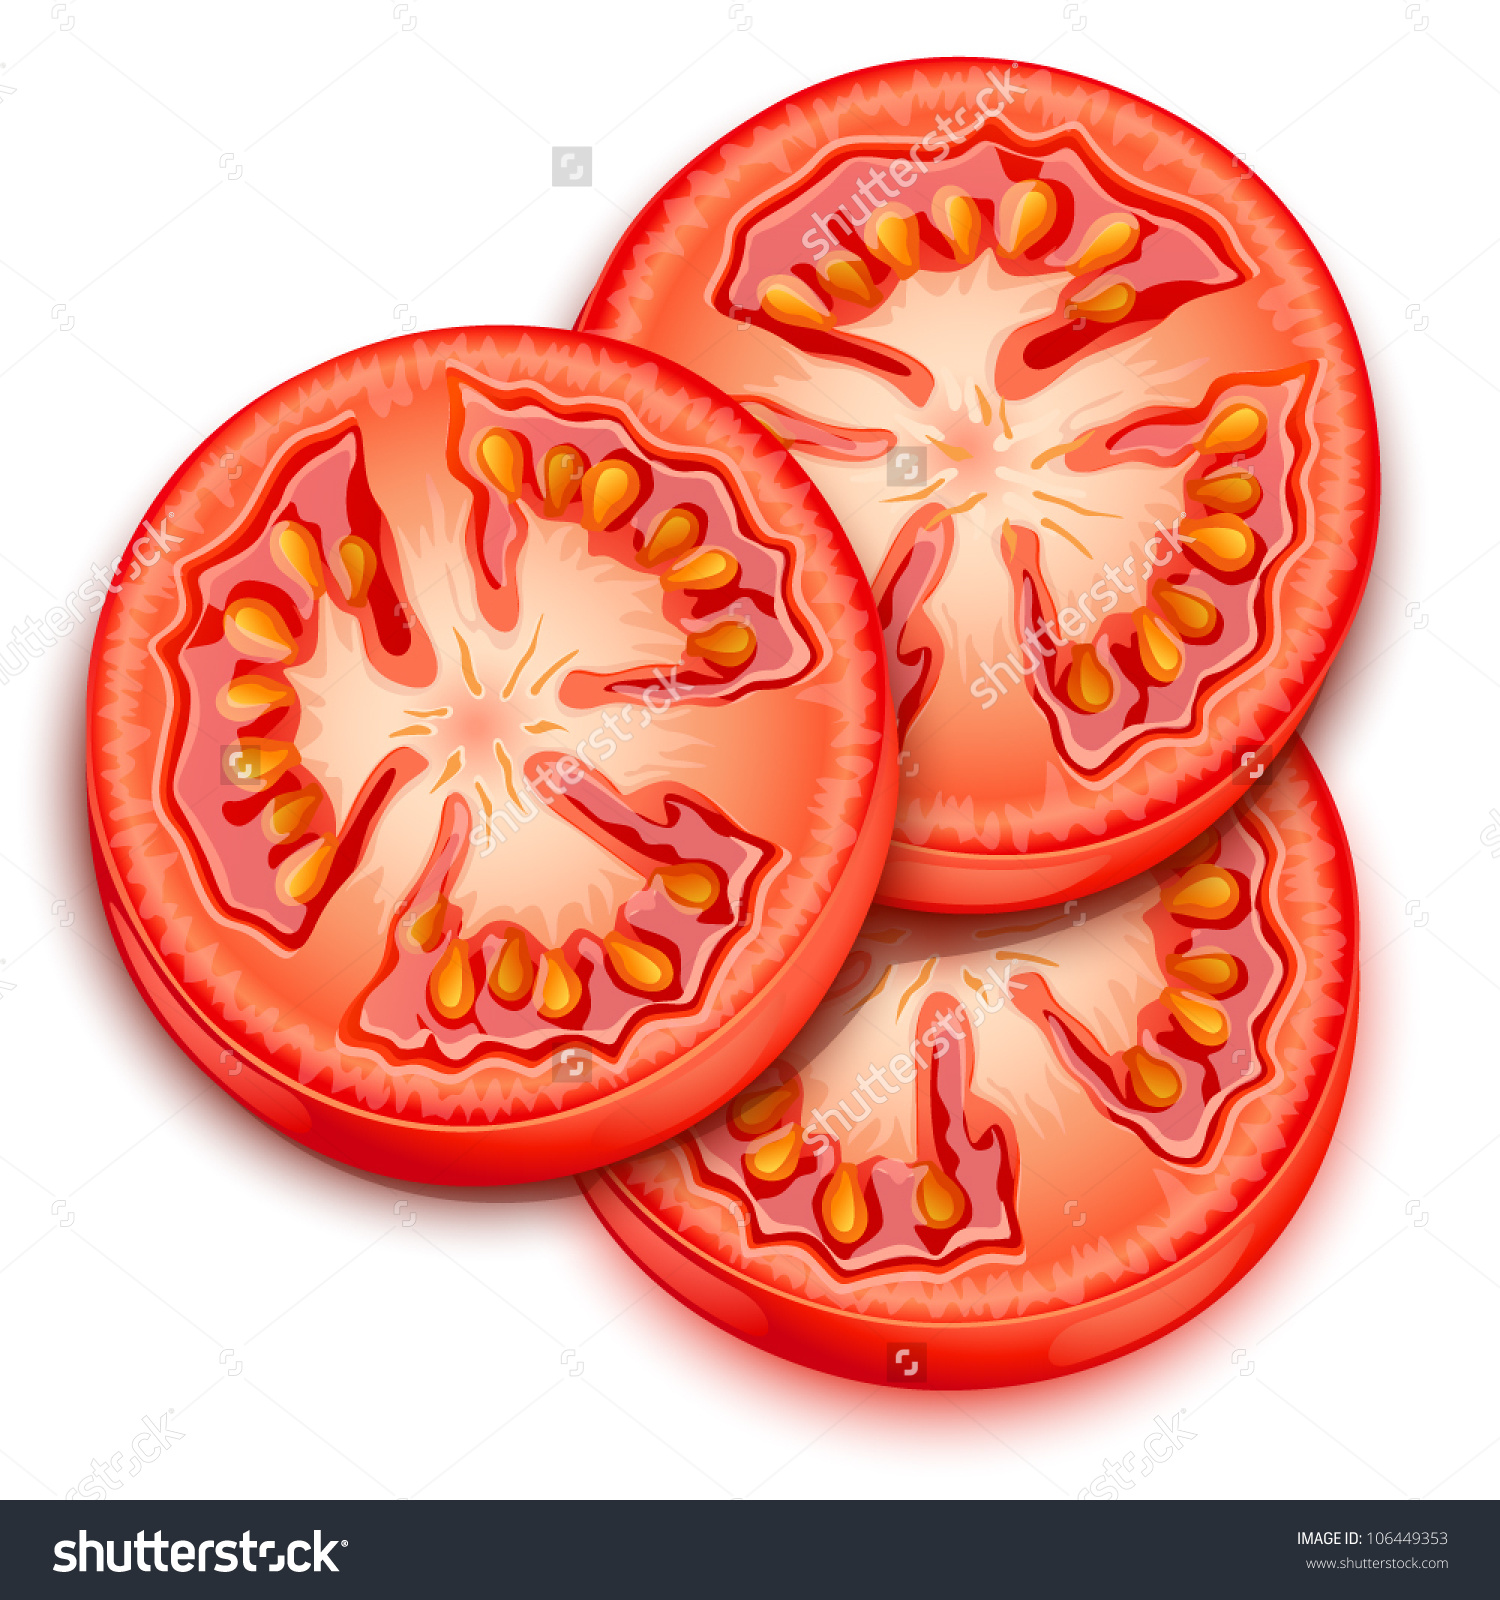 Tomato slice clip art.